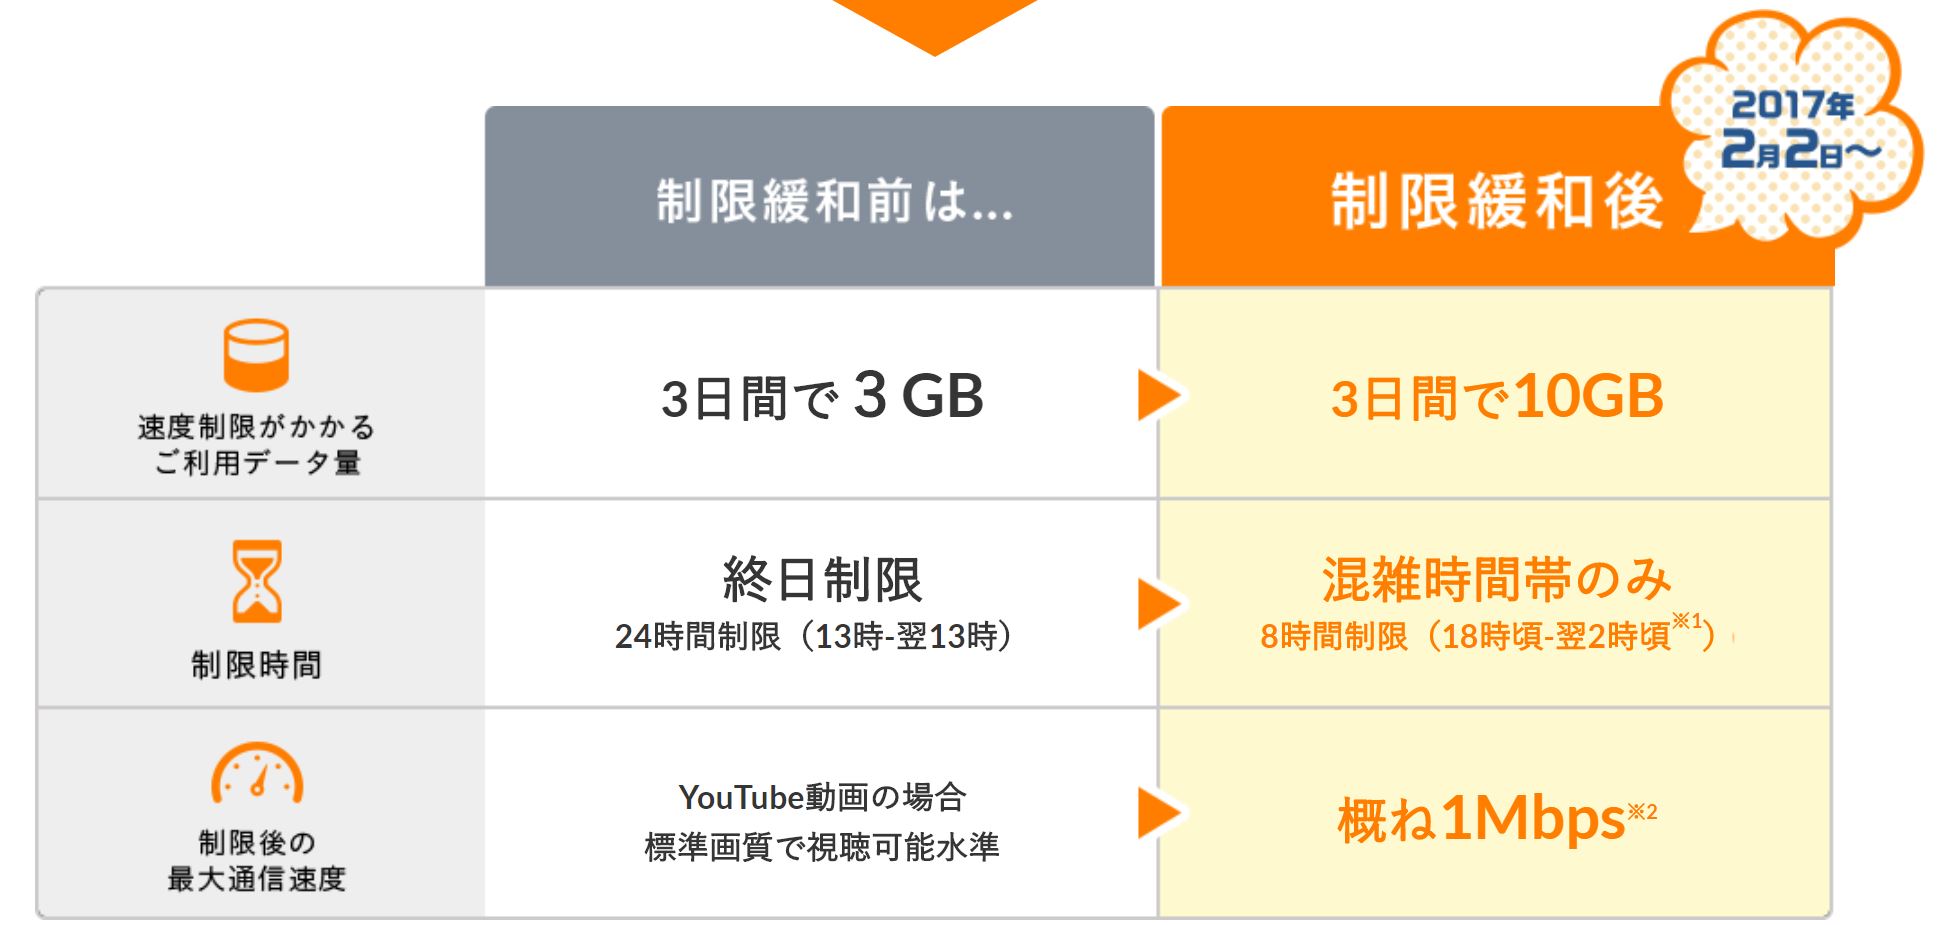 WIMAXの3日間通信制限は2017年2月に緩和され3日間で10GBになった